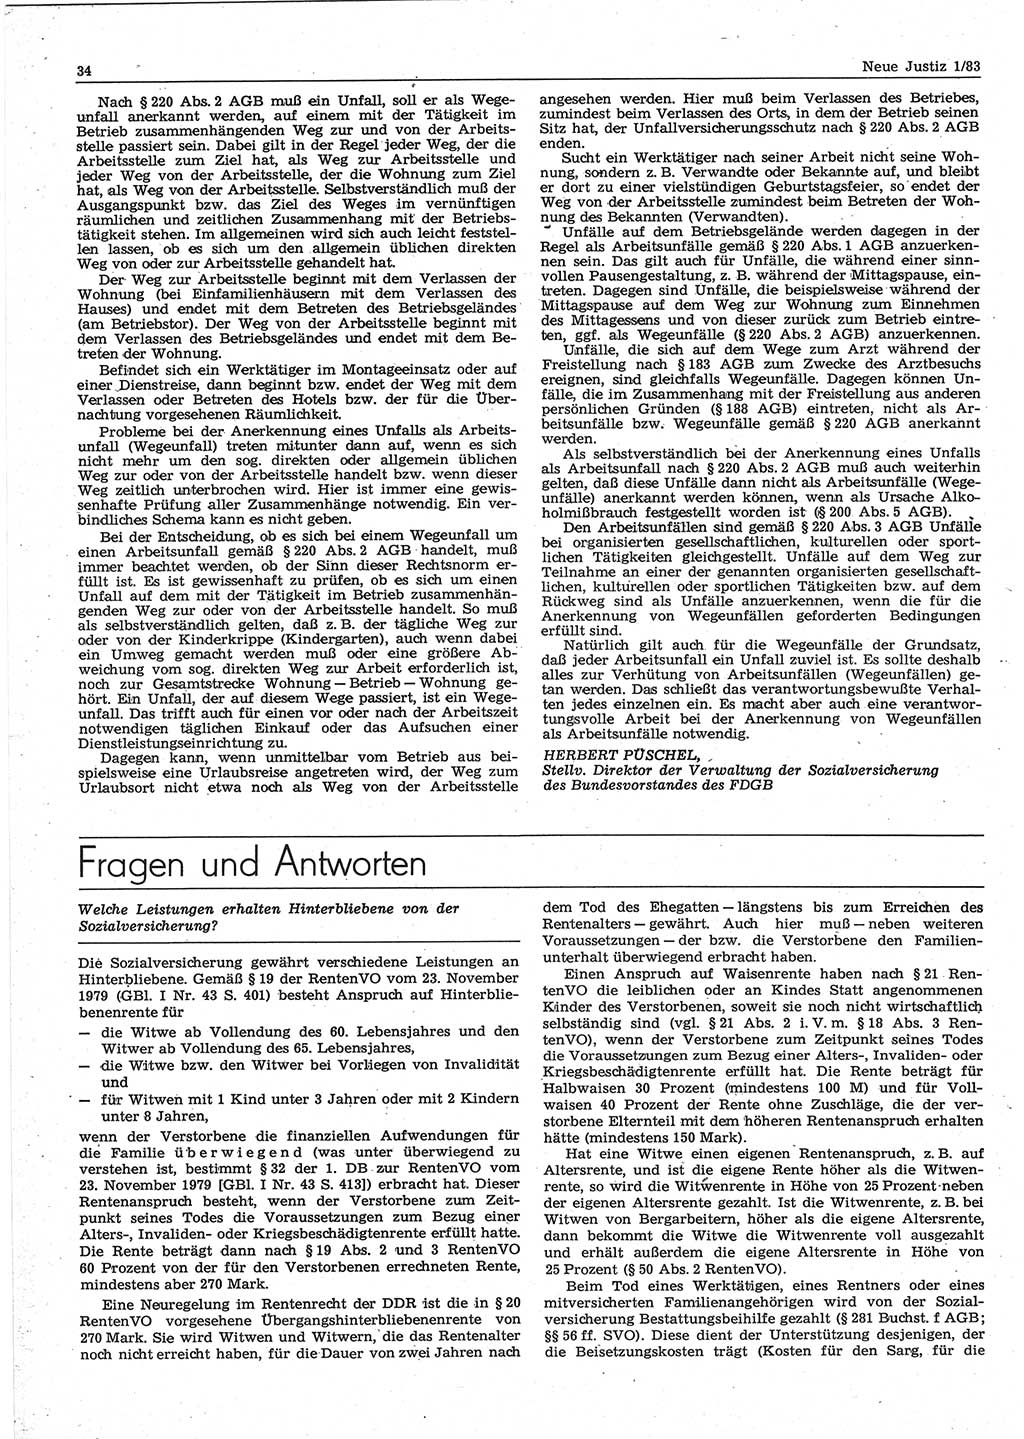 Neue Justiz (NJ), Zeitschrift für sozialistisches Recht und Gesetzlichkeit [Deutsche Demokratische Republik (DDR)], 37. Jahrgang 1983, Seite 34 (NJ DDR 1983, S. 34)